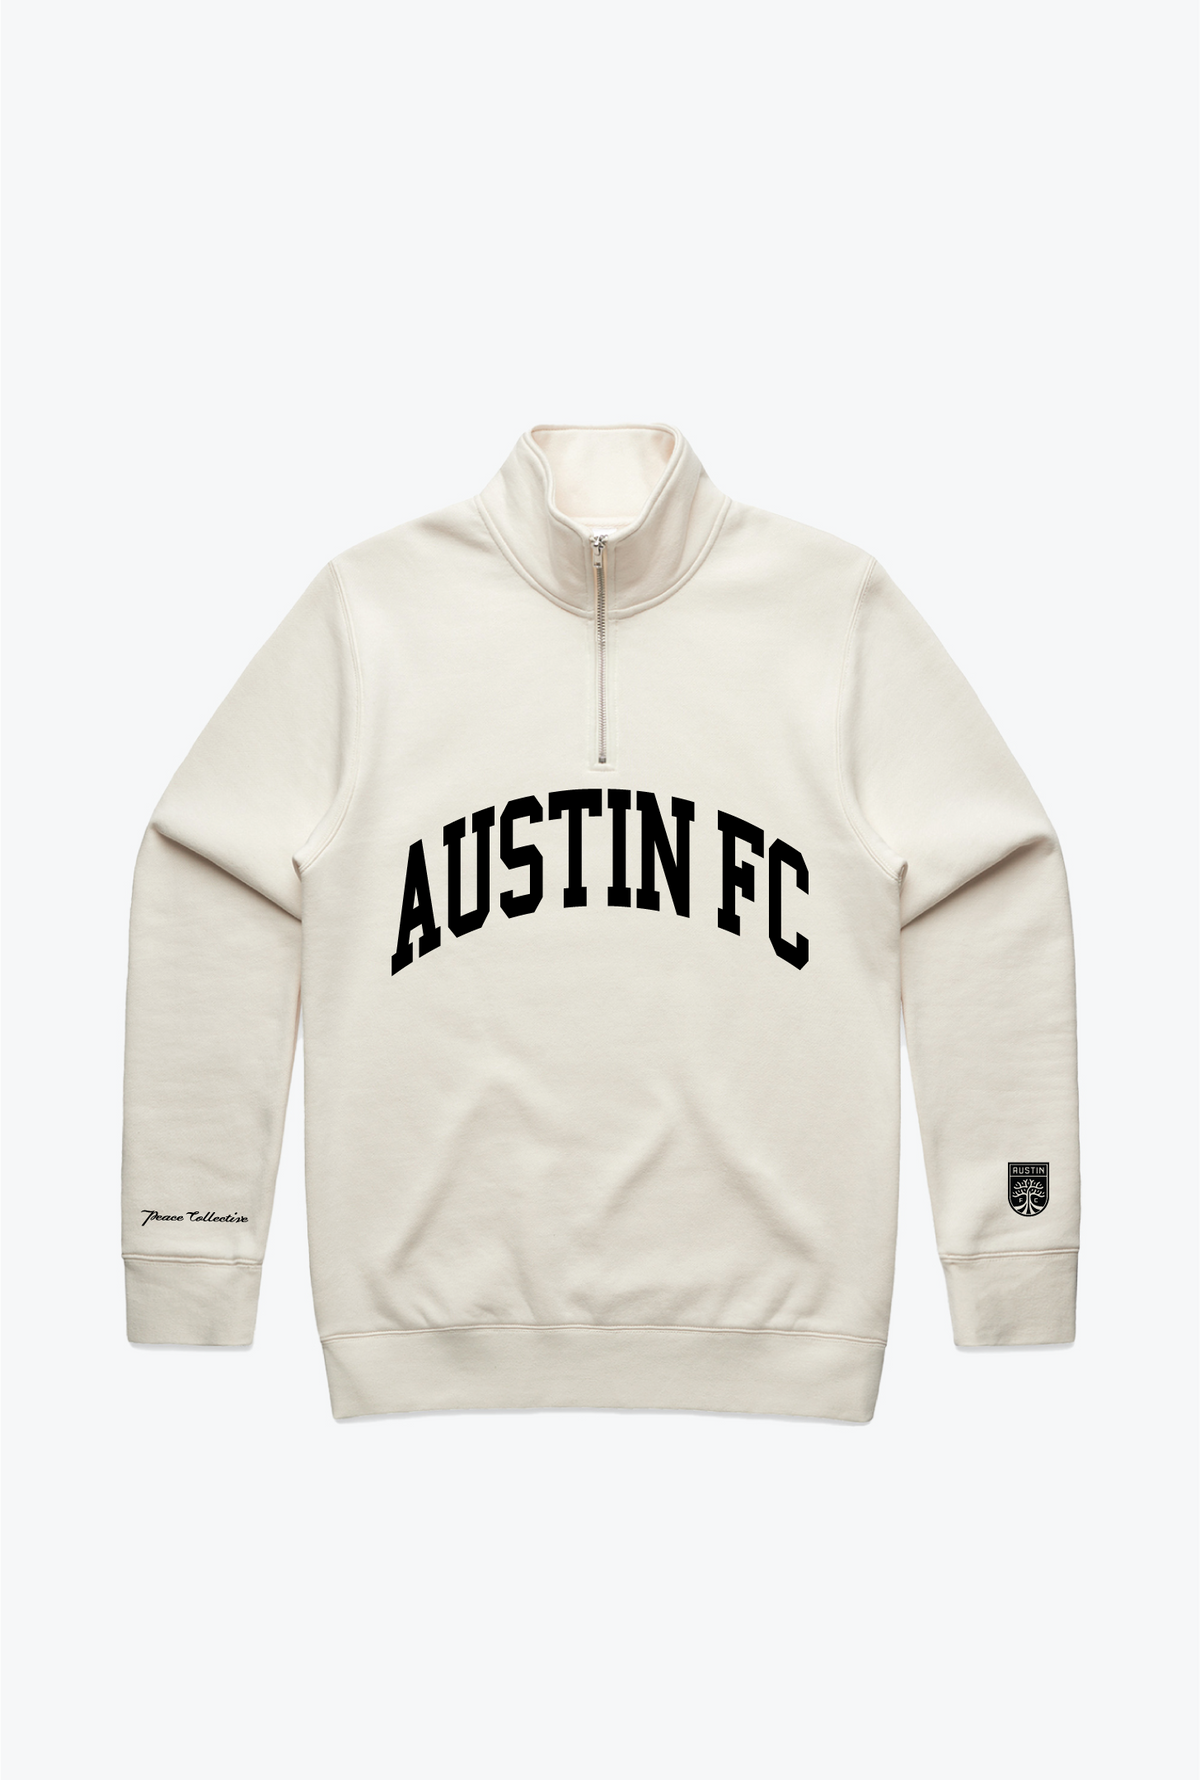 Austin FC Collegiate Quarter Zip - Ivory